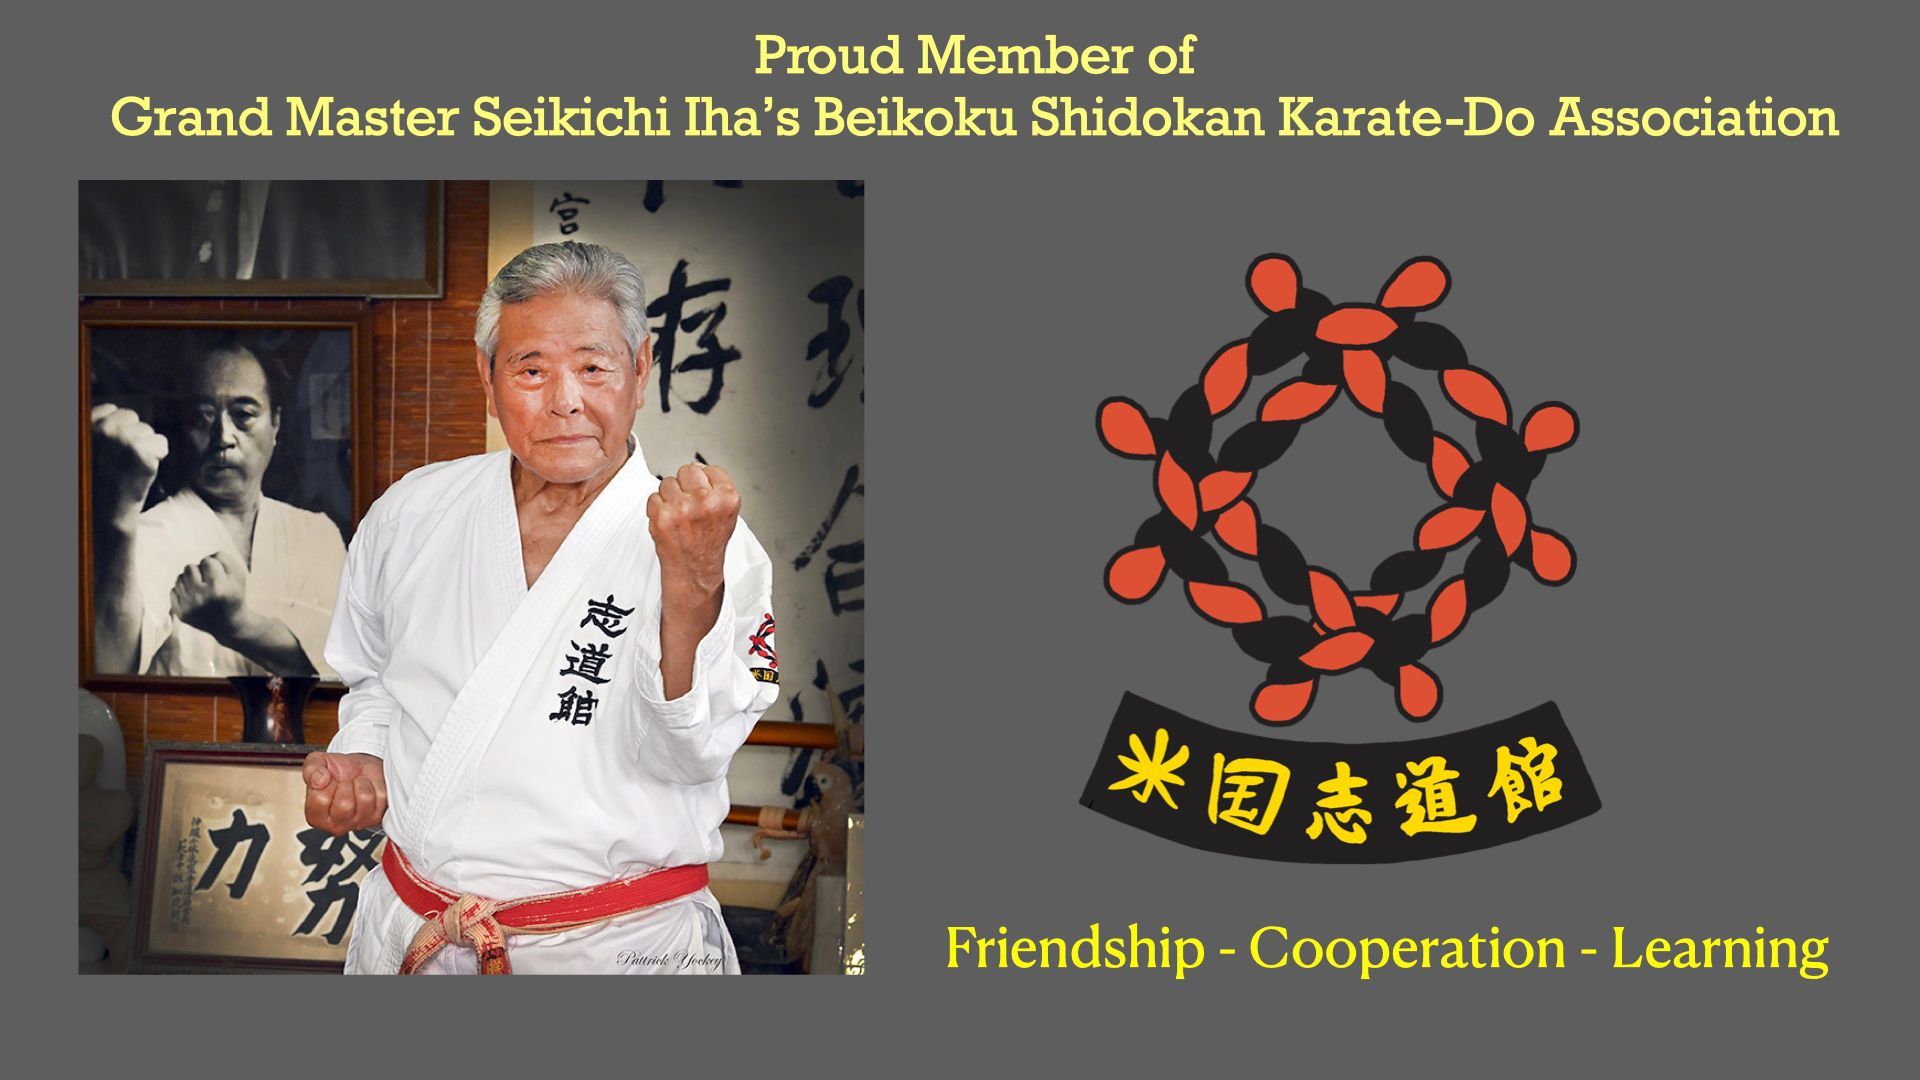 Grand Master Seikichi Iha's Beikoku Shidokan Karate-Do Association